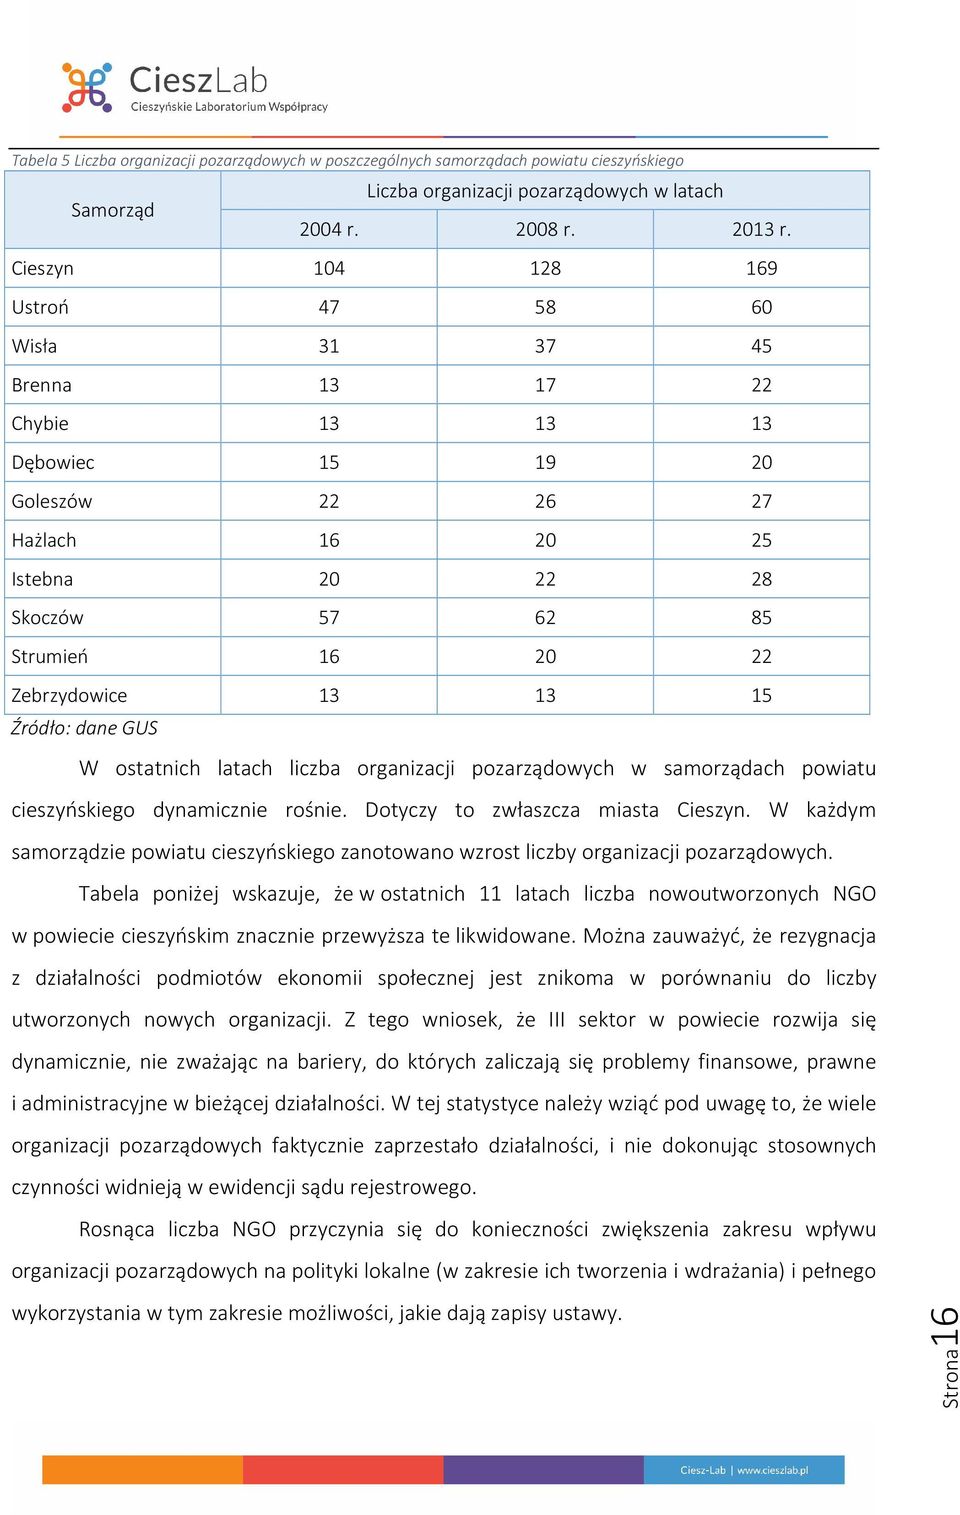 Zebrzydowice 13 13 15 Źródło: dane GUS W ostatnich latach liczba organizacji pozarządowych w samorządach powiatu cieszyńskiego dynamicznie rośnie. Dotyczy to zwłaszcza miasta Cieszyn.